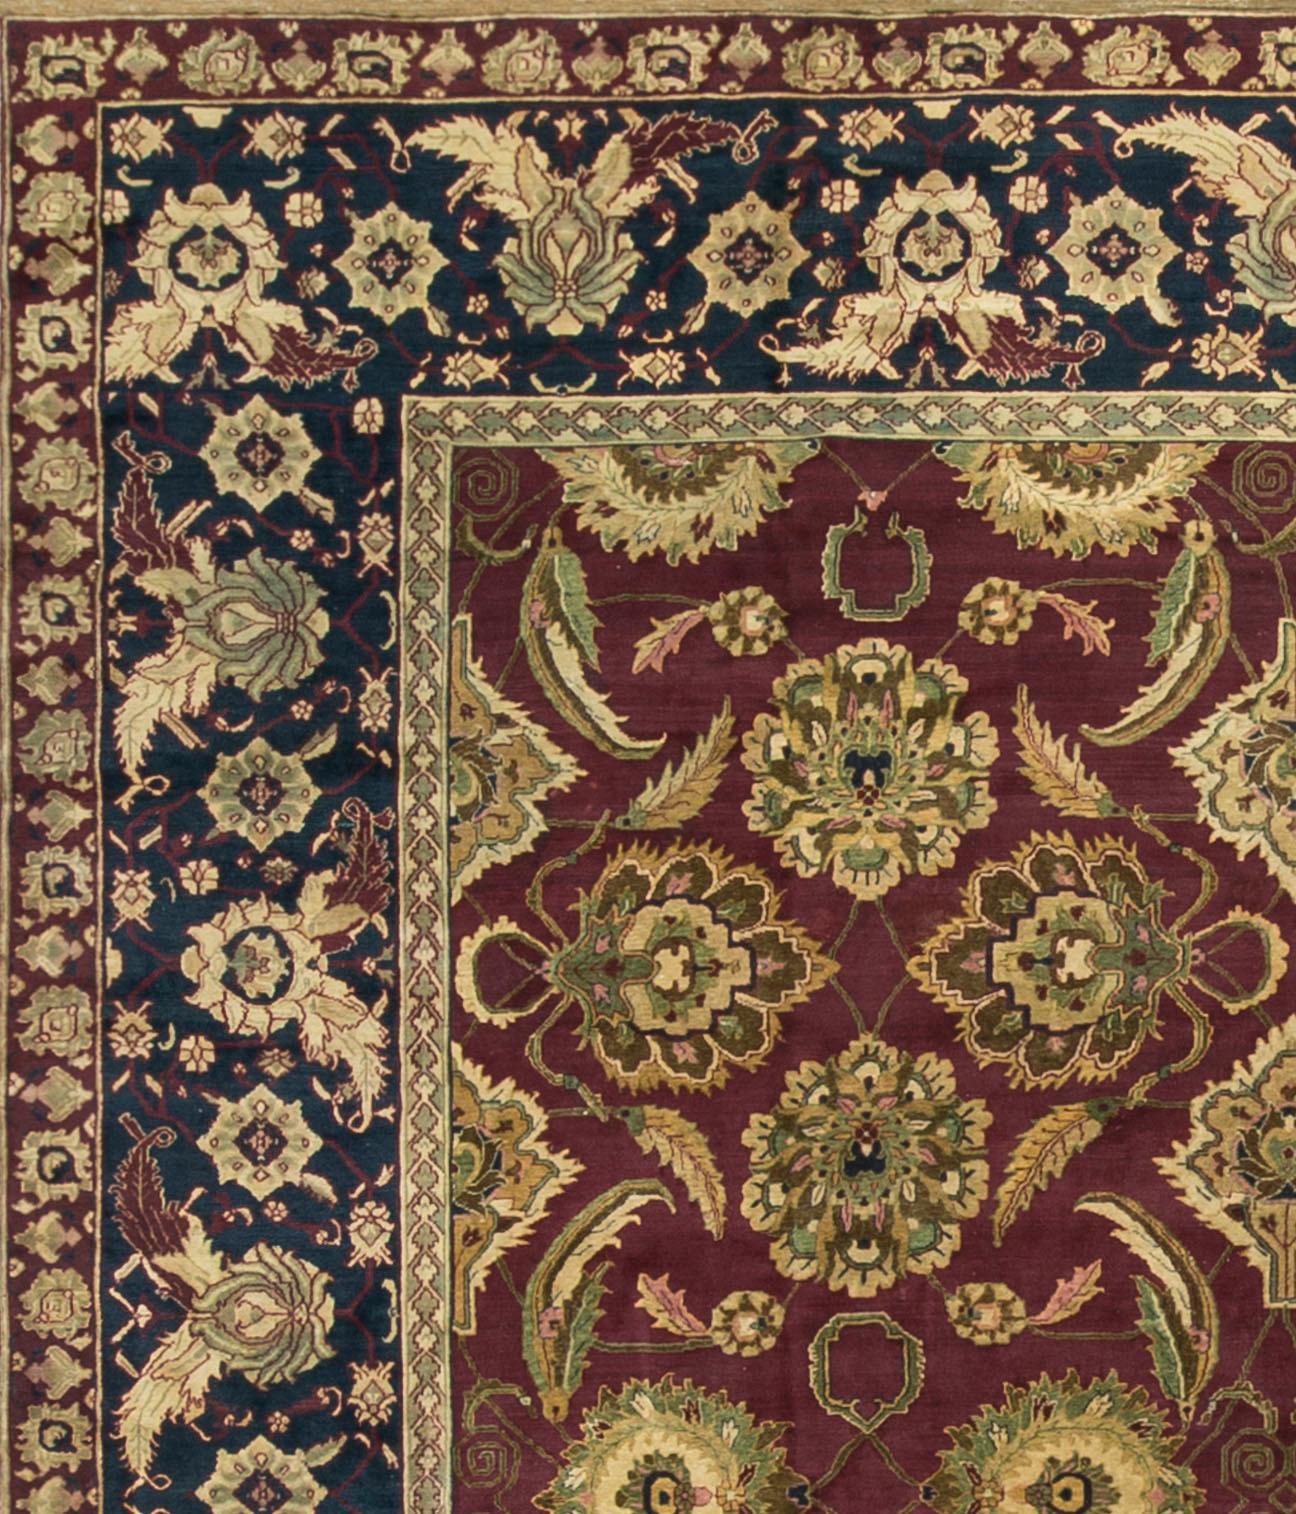 e tapis indien antique d'Agra, datant d'environ 1890, présente un design distinctif et finement travaillé. Les tapis Agra sont connus pour leur grandeur et présentent souvent des motifs floraux audacieux et des détails complexes. Le champ central de